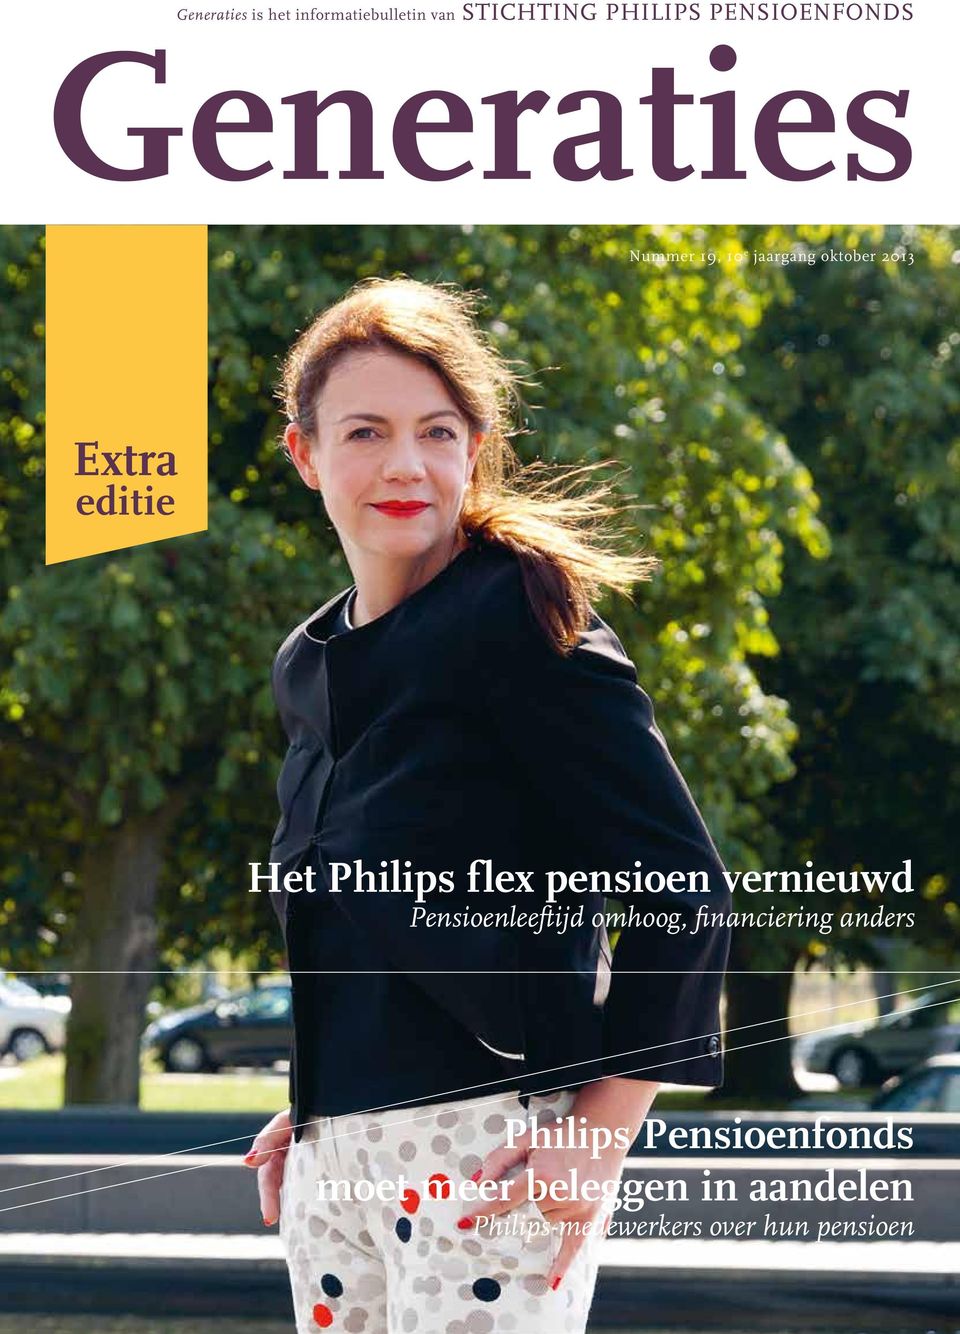 flex pensioen vernieuwd Pensioenleeftijd omhoog, financiering anders Philips